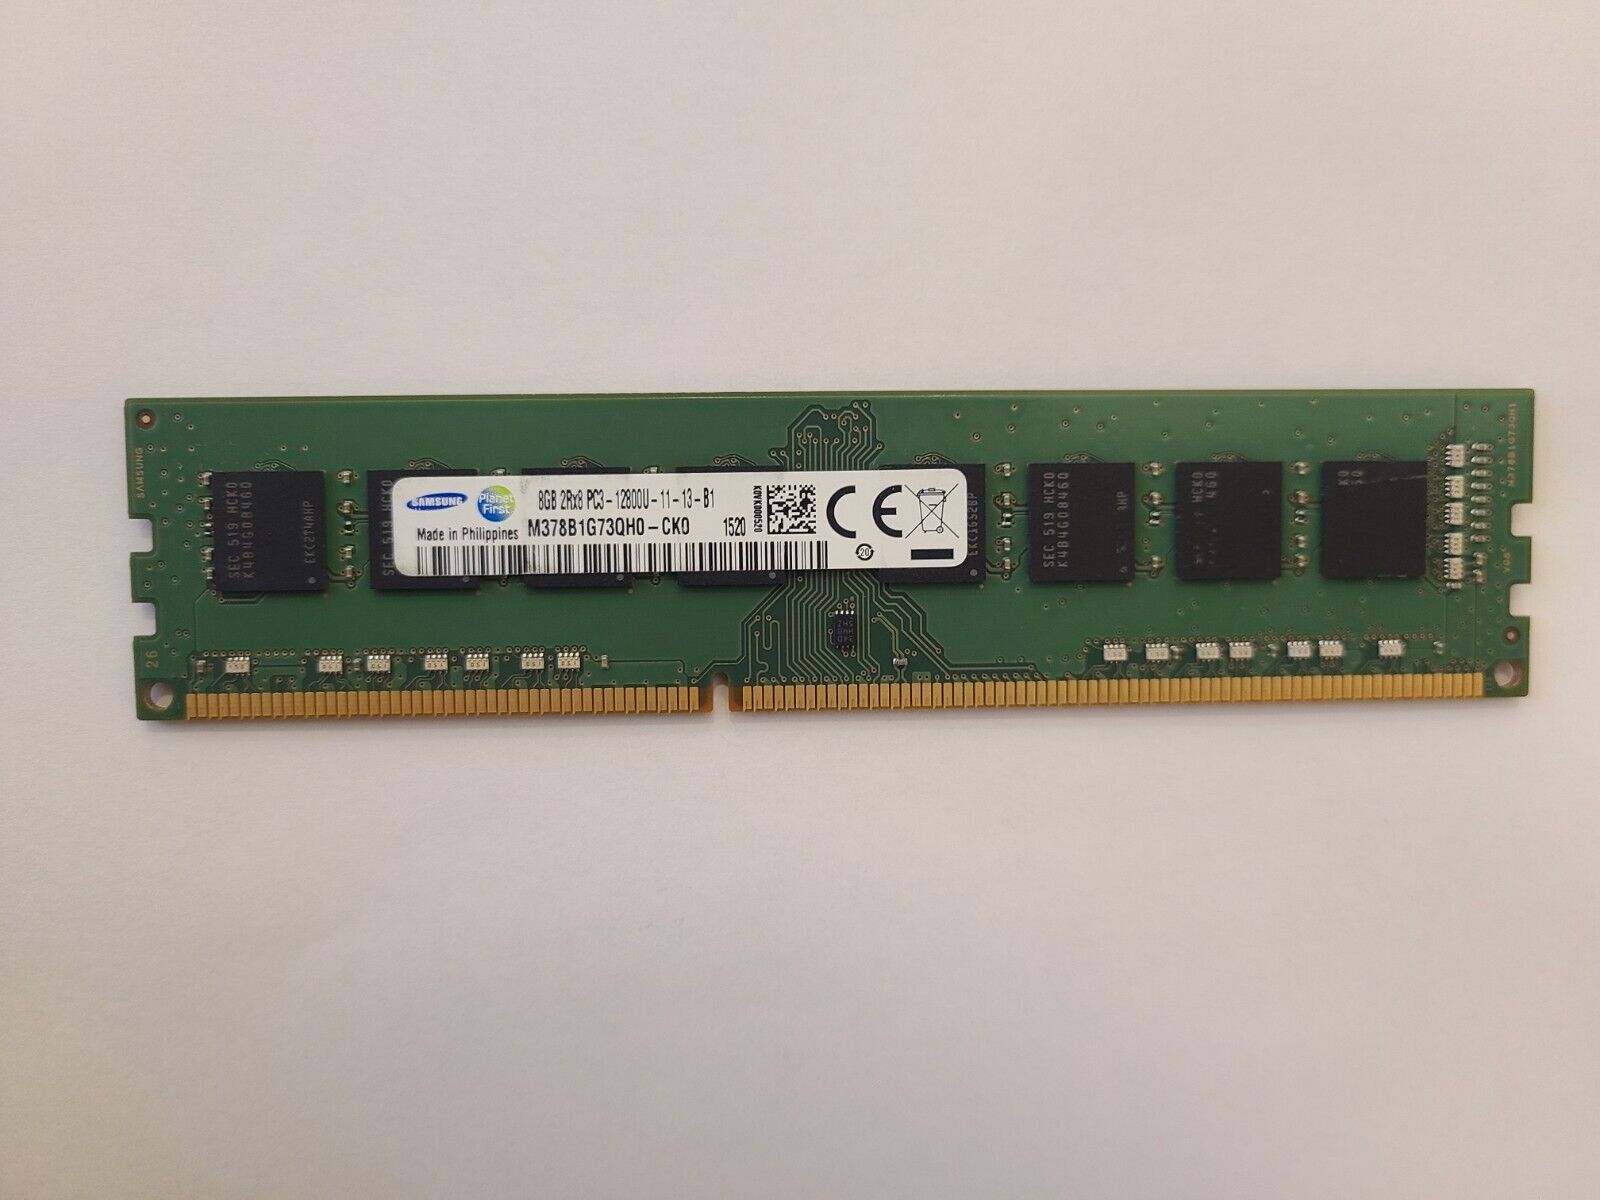 Samsung M378B1G73QH0-CK0 8GB (1x8GB) 1600MHz 240-pin DDR3 DIMM RAM Module